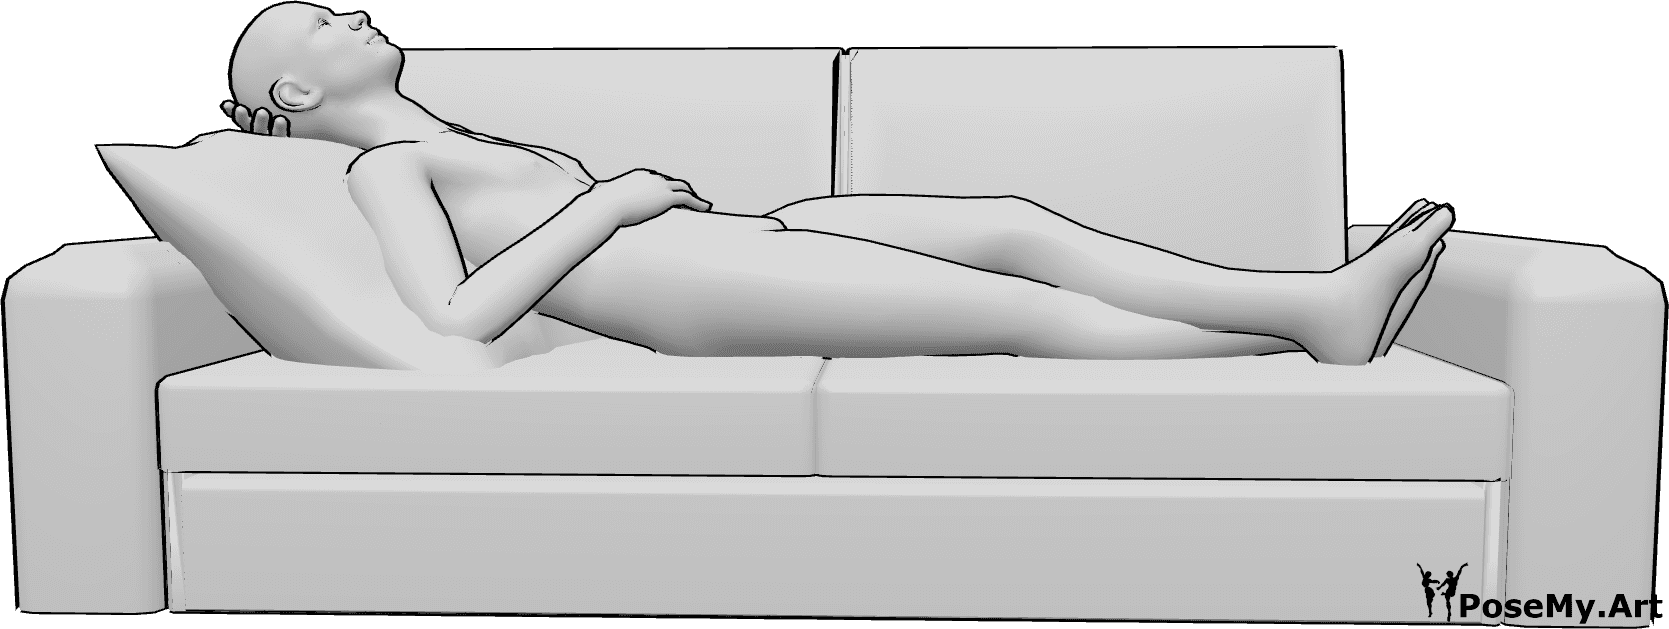 Posen-Referenz- Männlich liegend in Ruhepose - Das Männchen liegt auf der Couch und ruht sich aus, seine Beine sind gekreuzt und er schaut nach oben